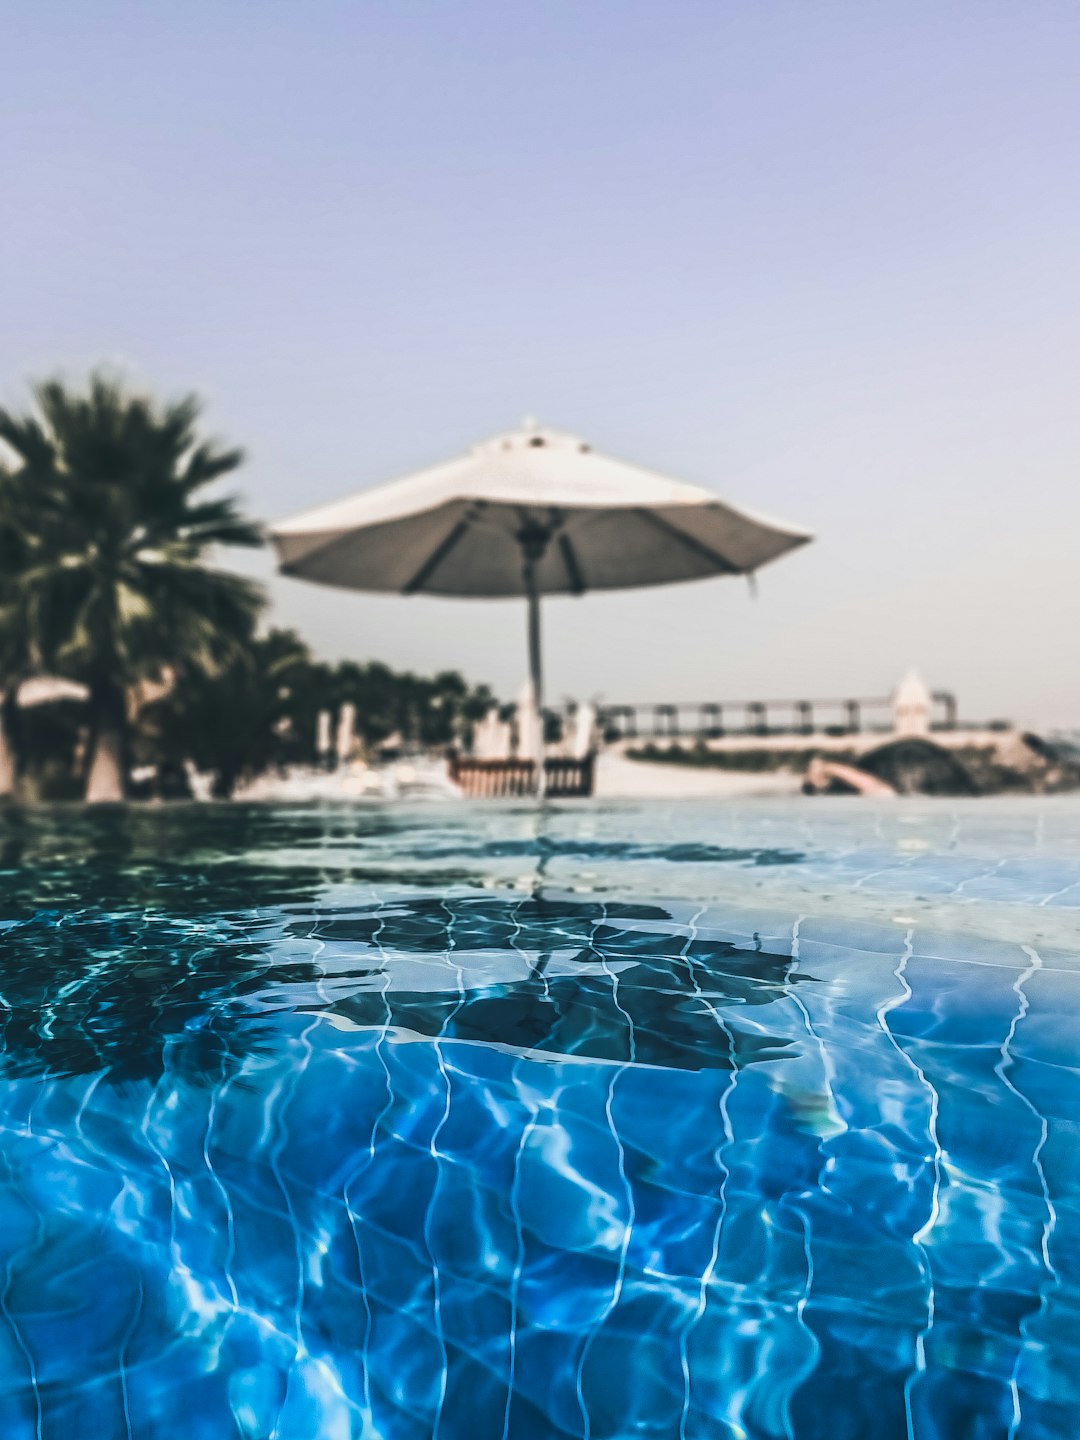 Resort photo spot Ras Al-Khaimah - Ras al Khaimah - United Arab Emirates Sharjah